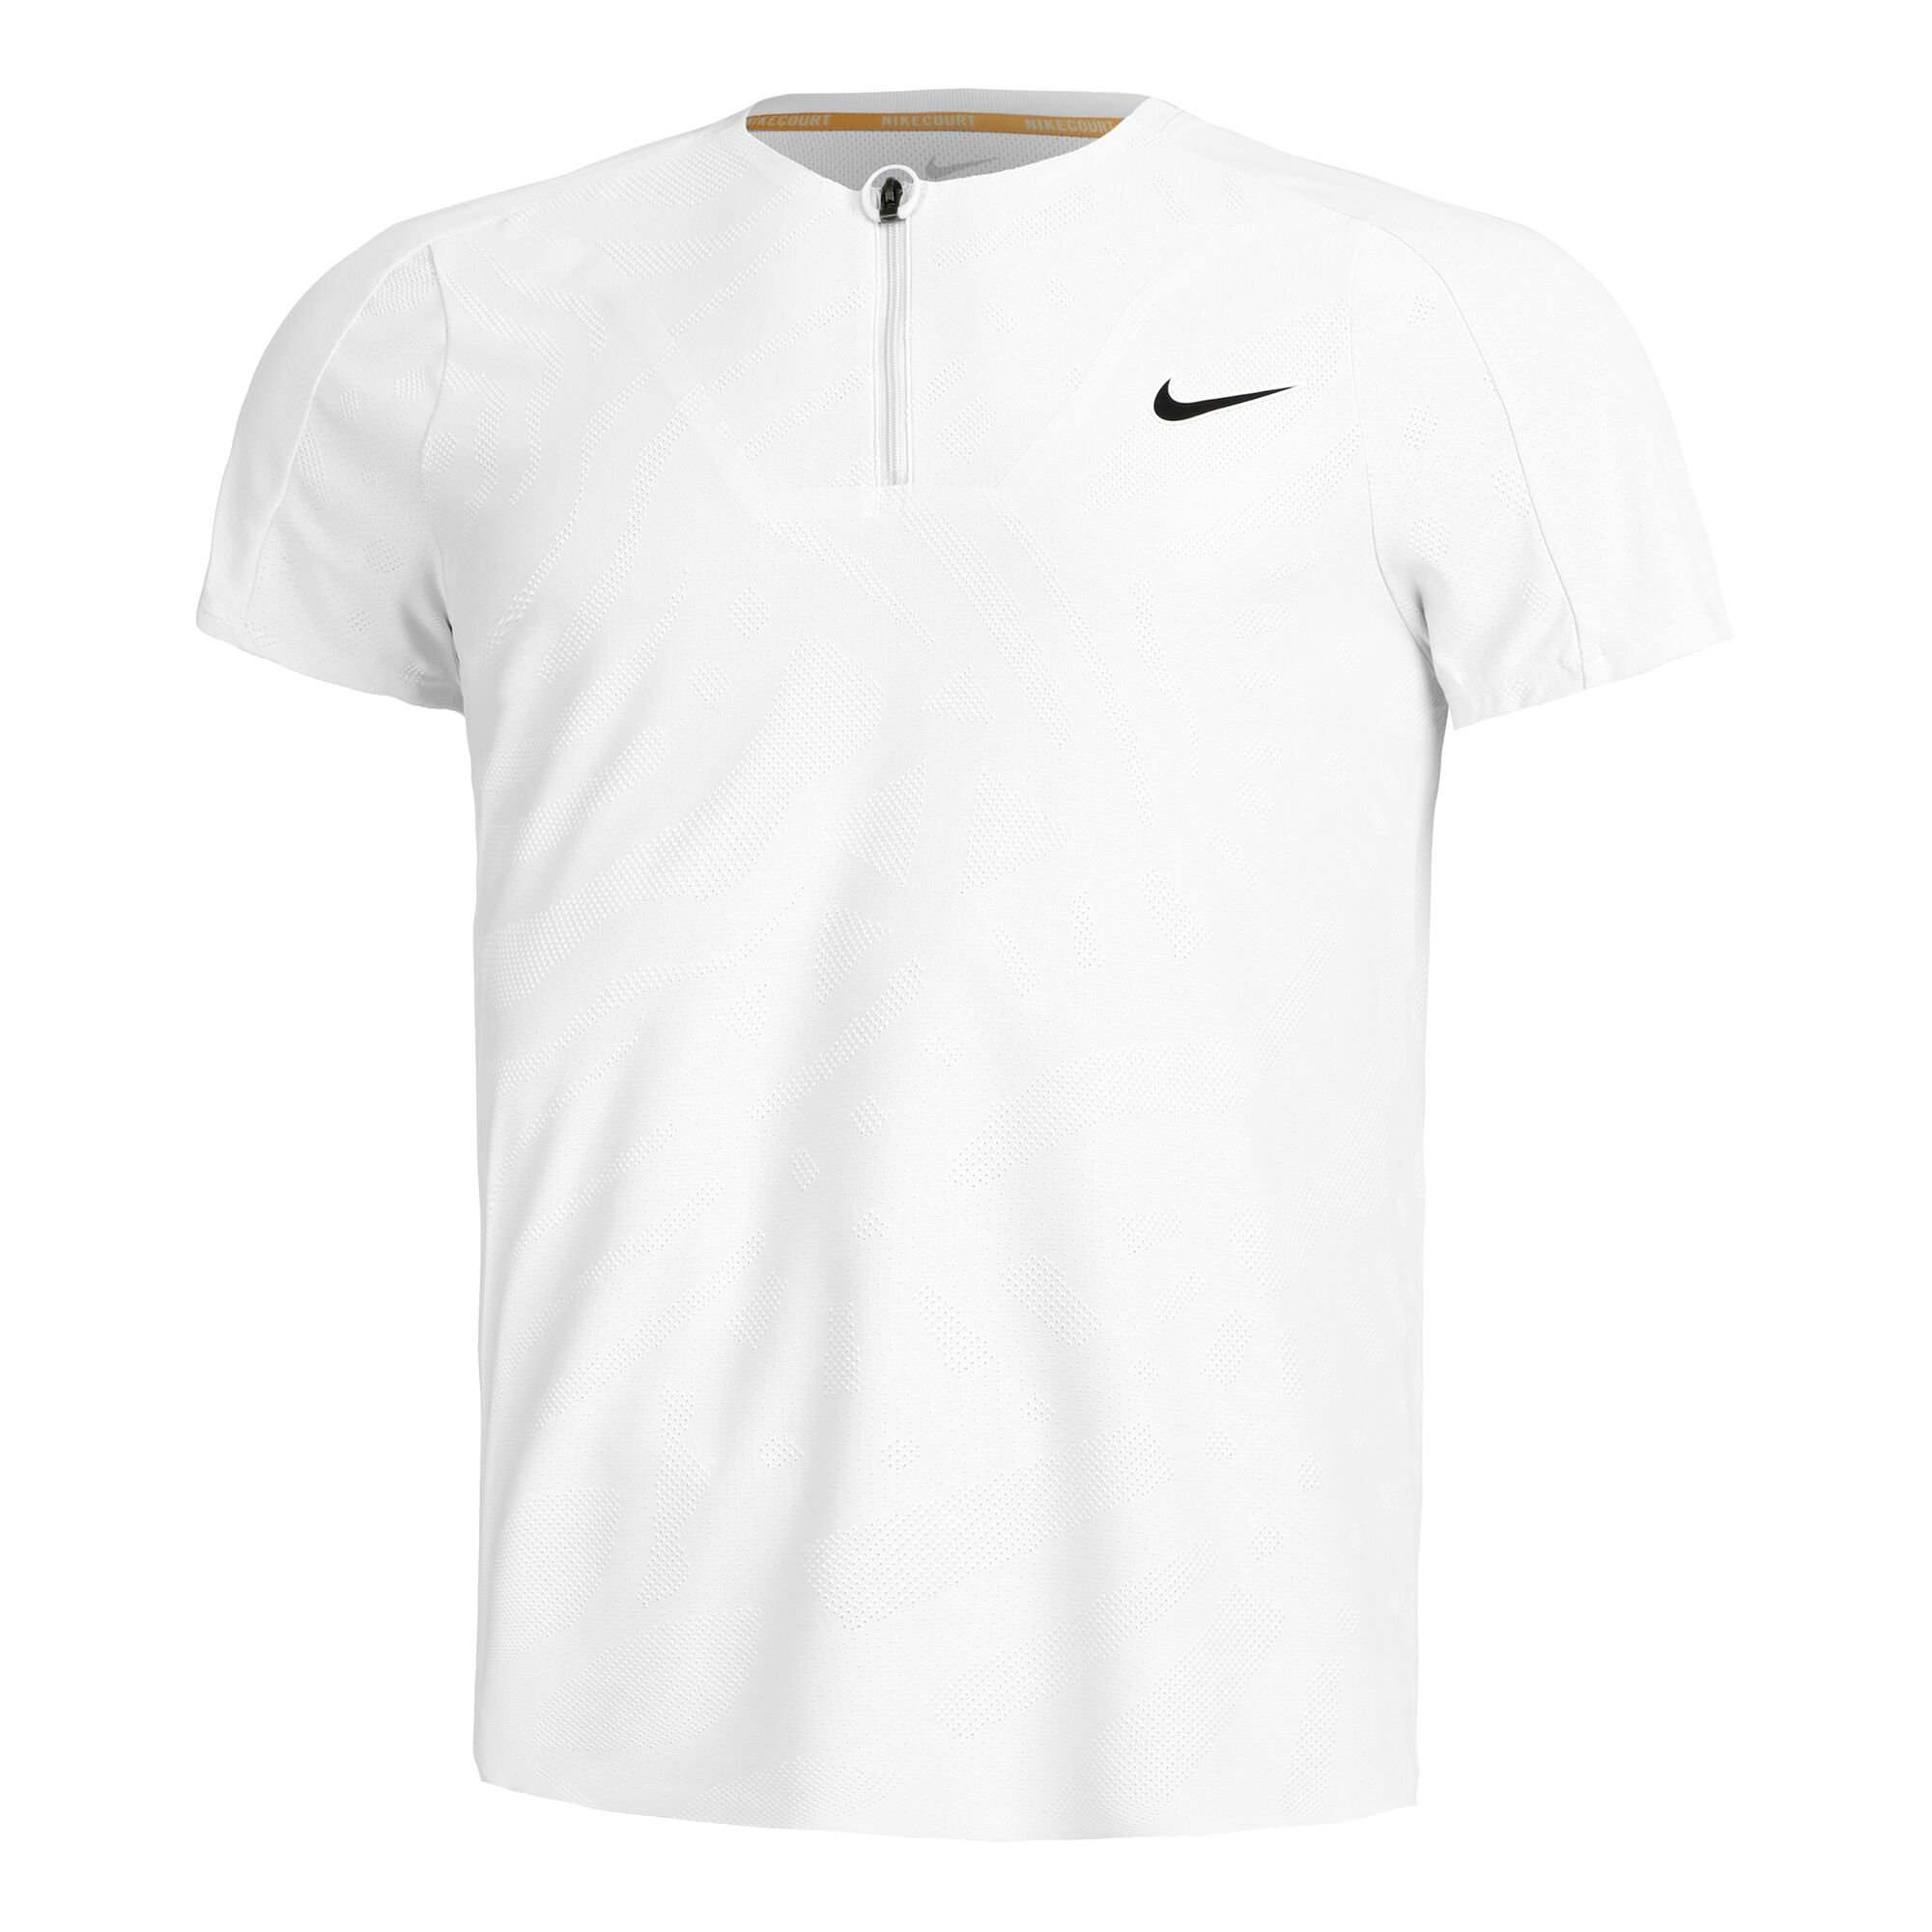 Buy Nike Dri-Fit Advantage Polo Men White online